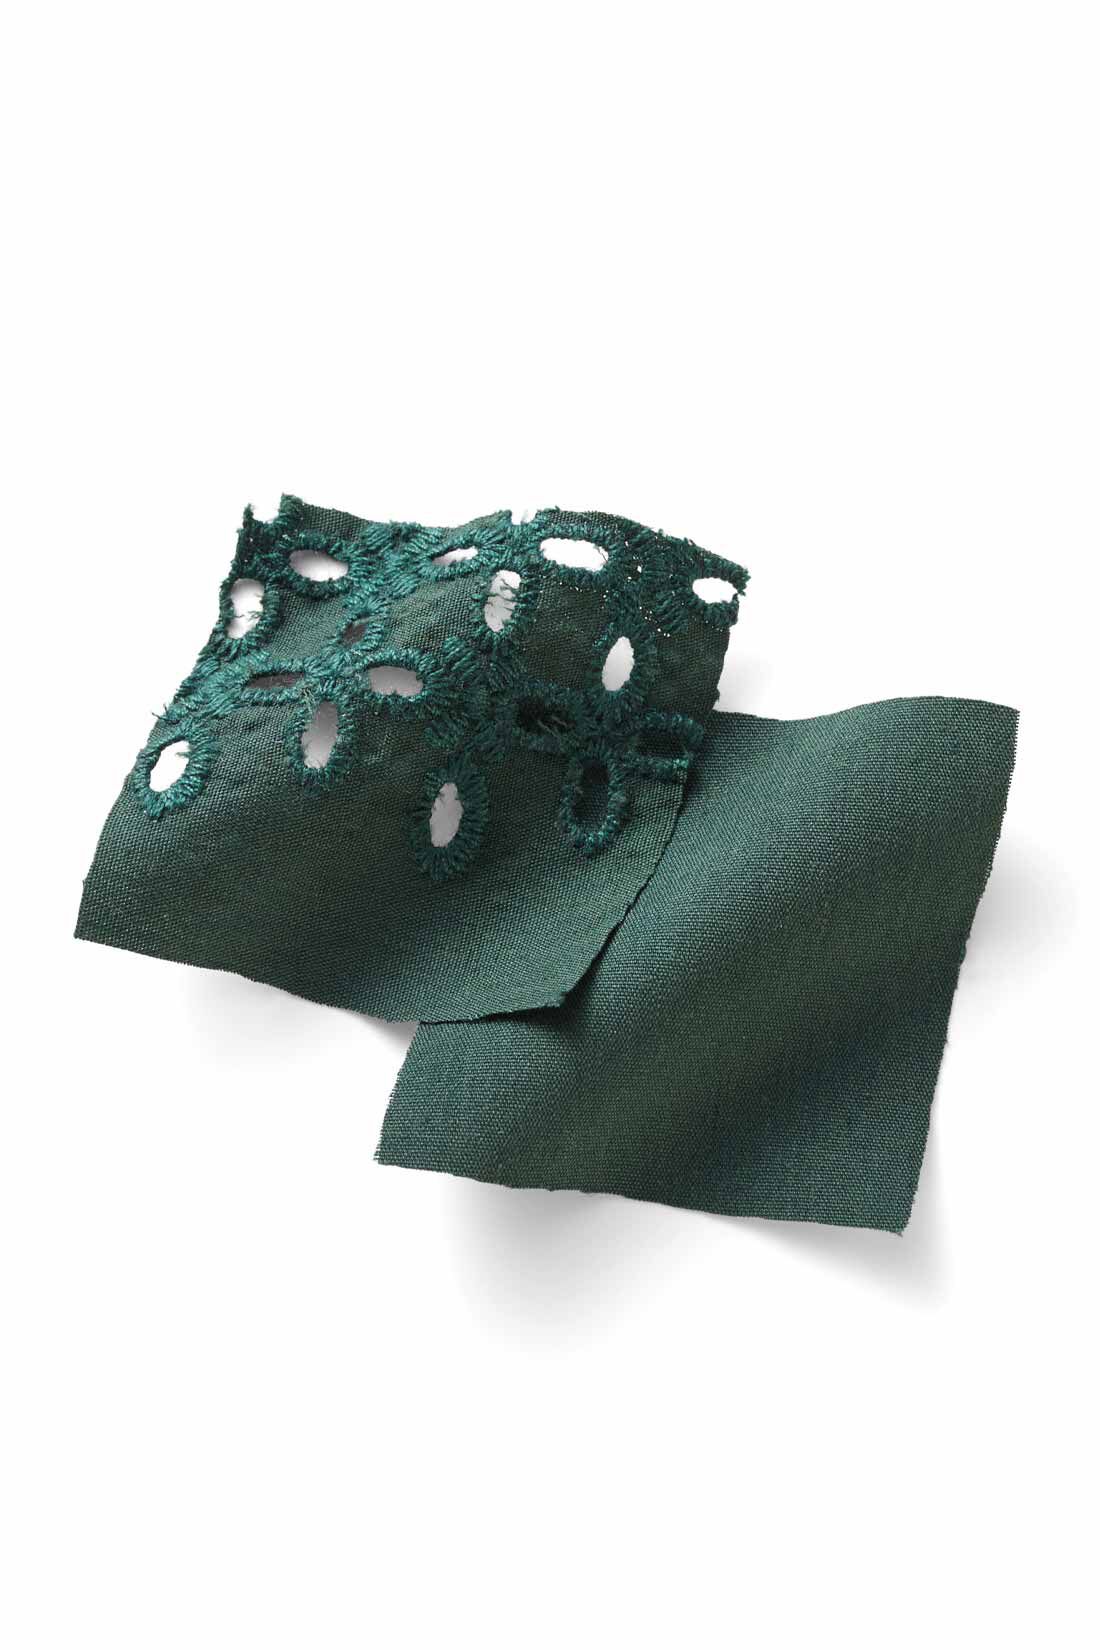 IEDIT|IEDIT[イディット]　アンティーク風デザインの袖レースブラウス|張り感のある布はく素材とレトロな表情のエンブロイダリーレースはしわが気になりにくいナチュラルな素材感。